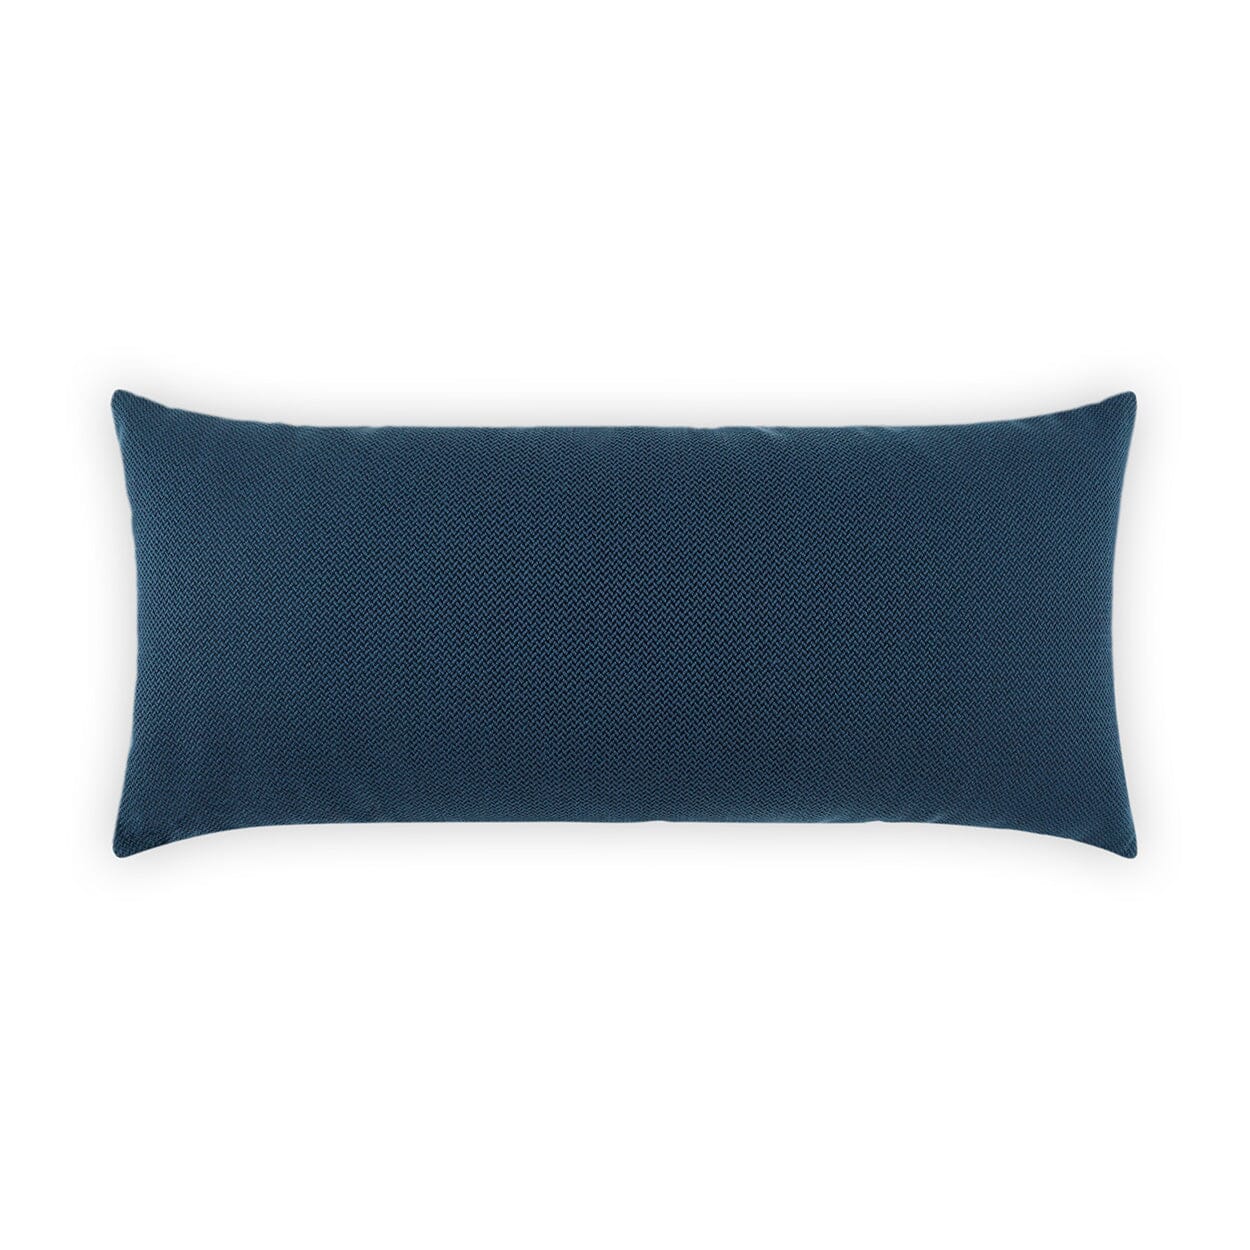 D.V. Kap 12" x 24" Outdoor Lumbar Pillow | Pyke Navy Lumbar Pillows D.V Kap Outdoor